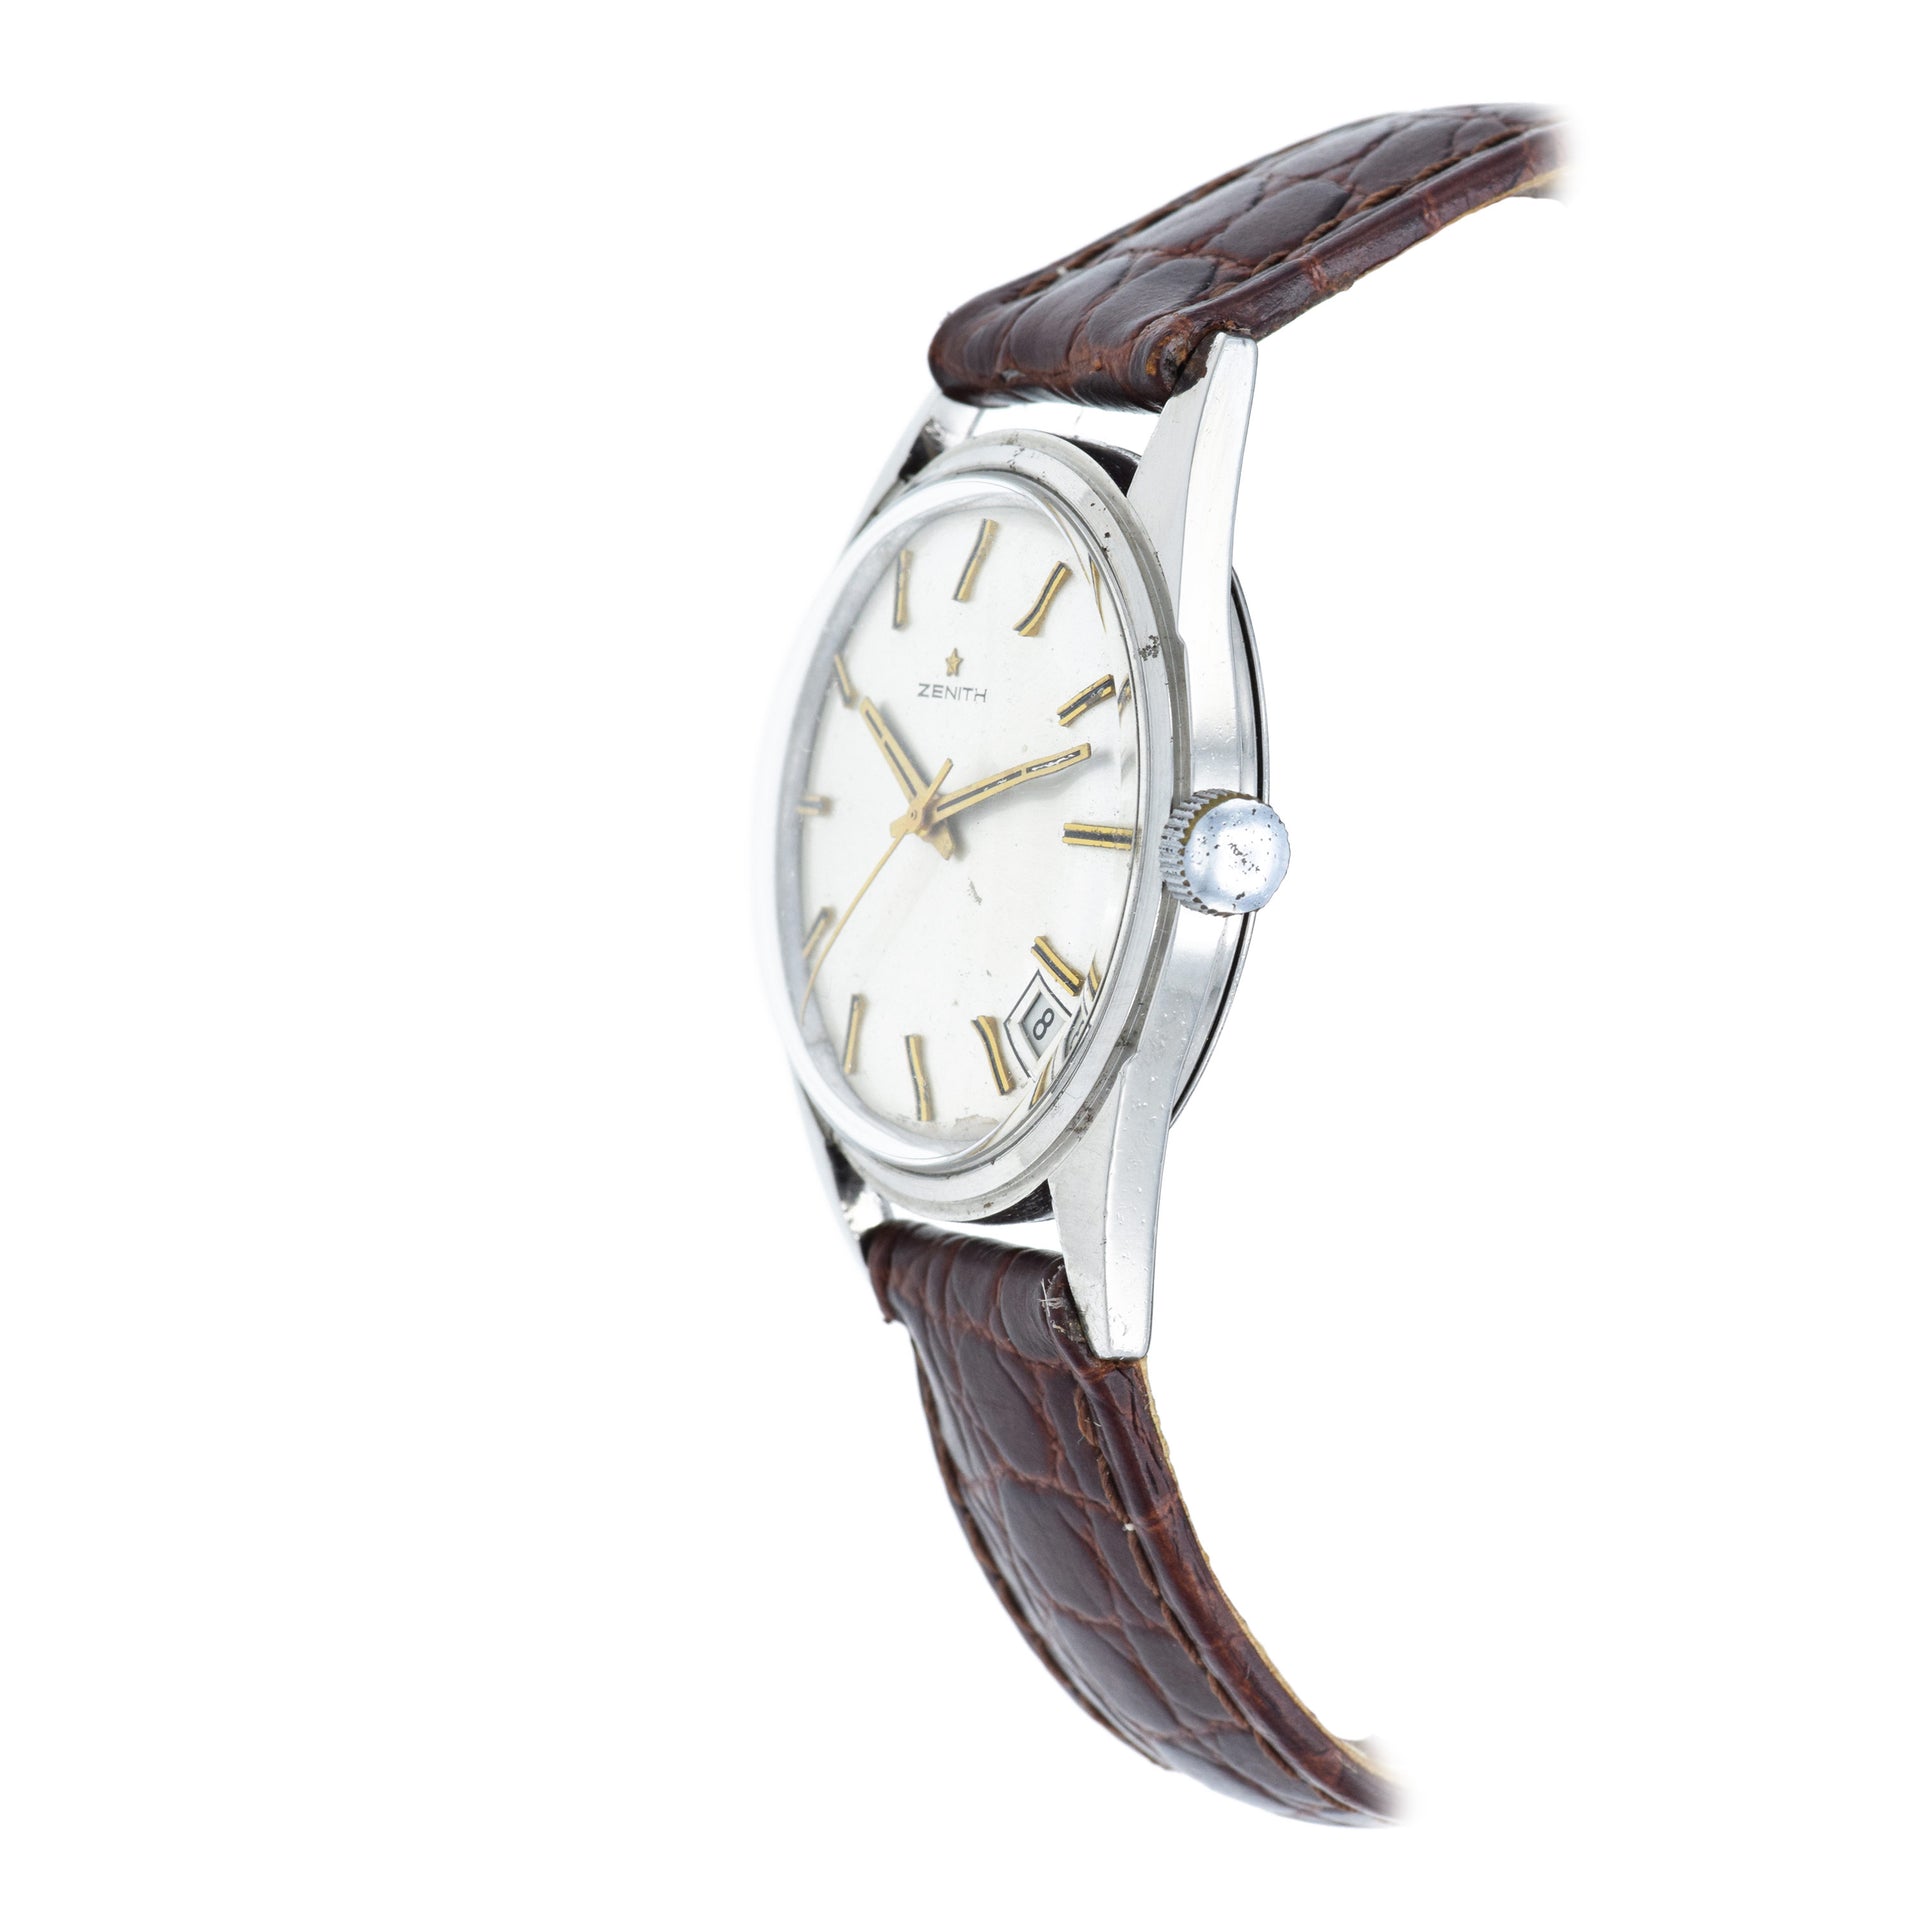 Vintage 1960s Zenith Watch